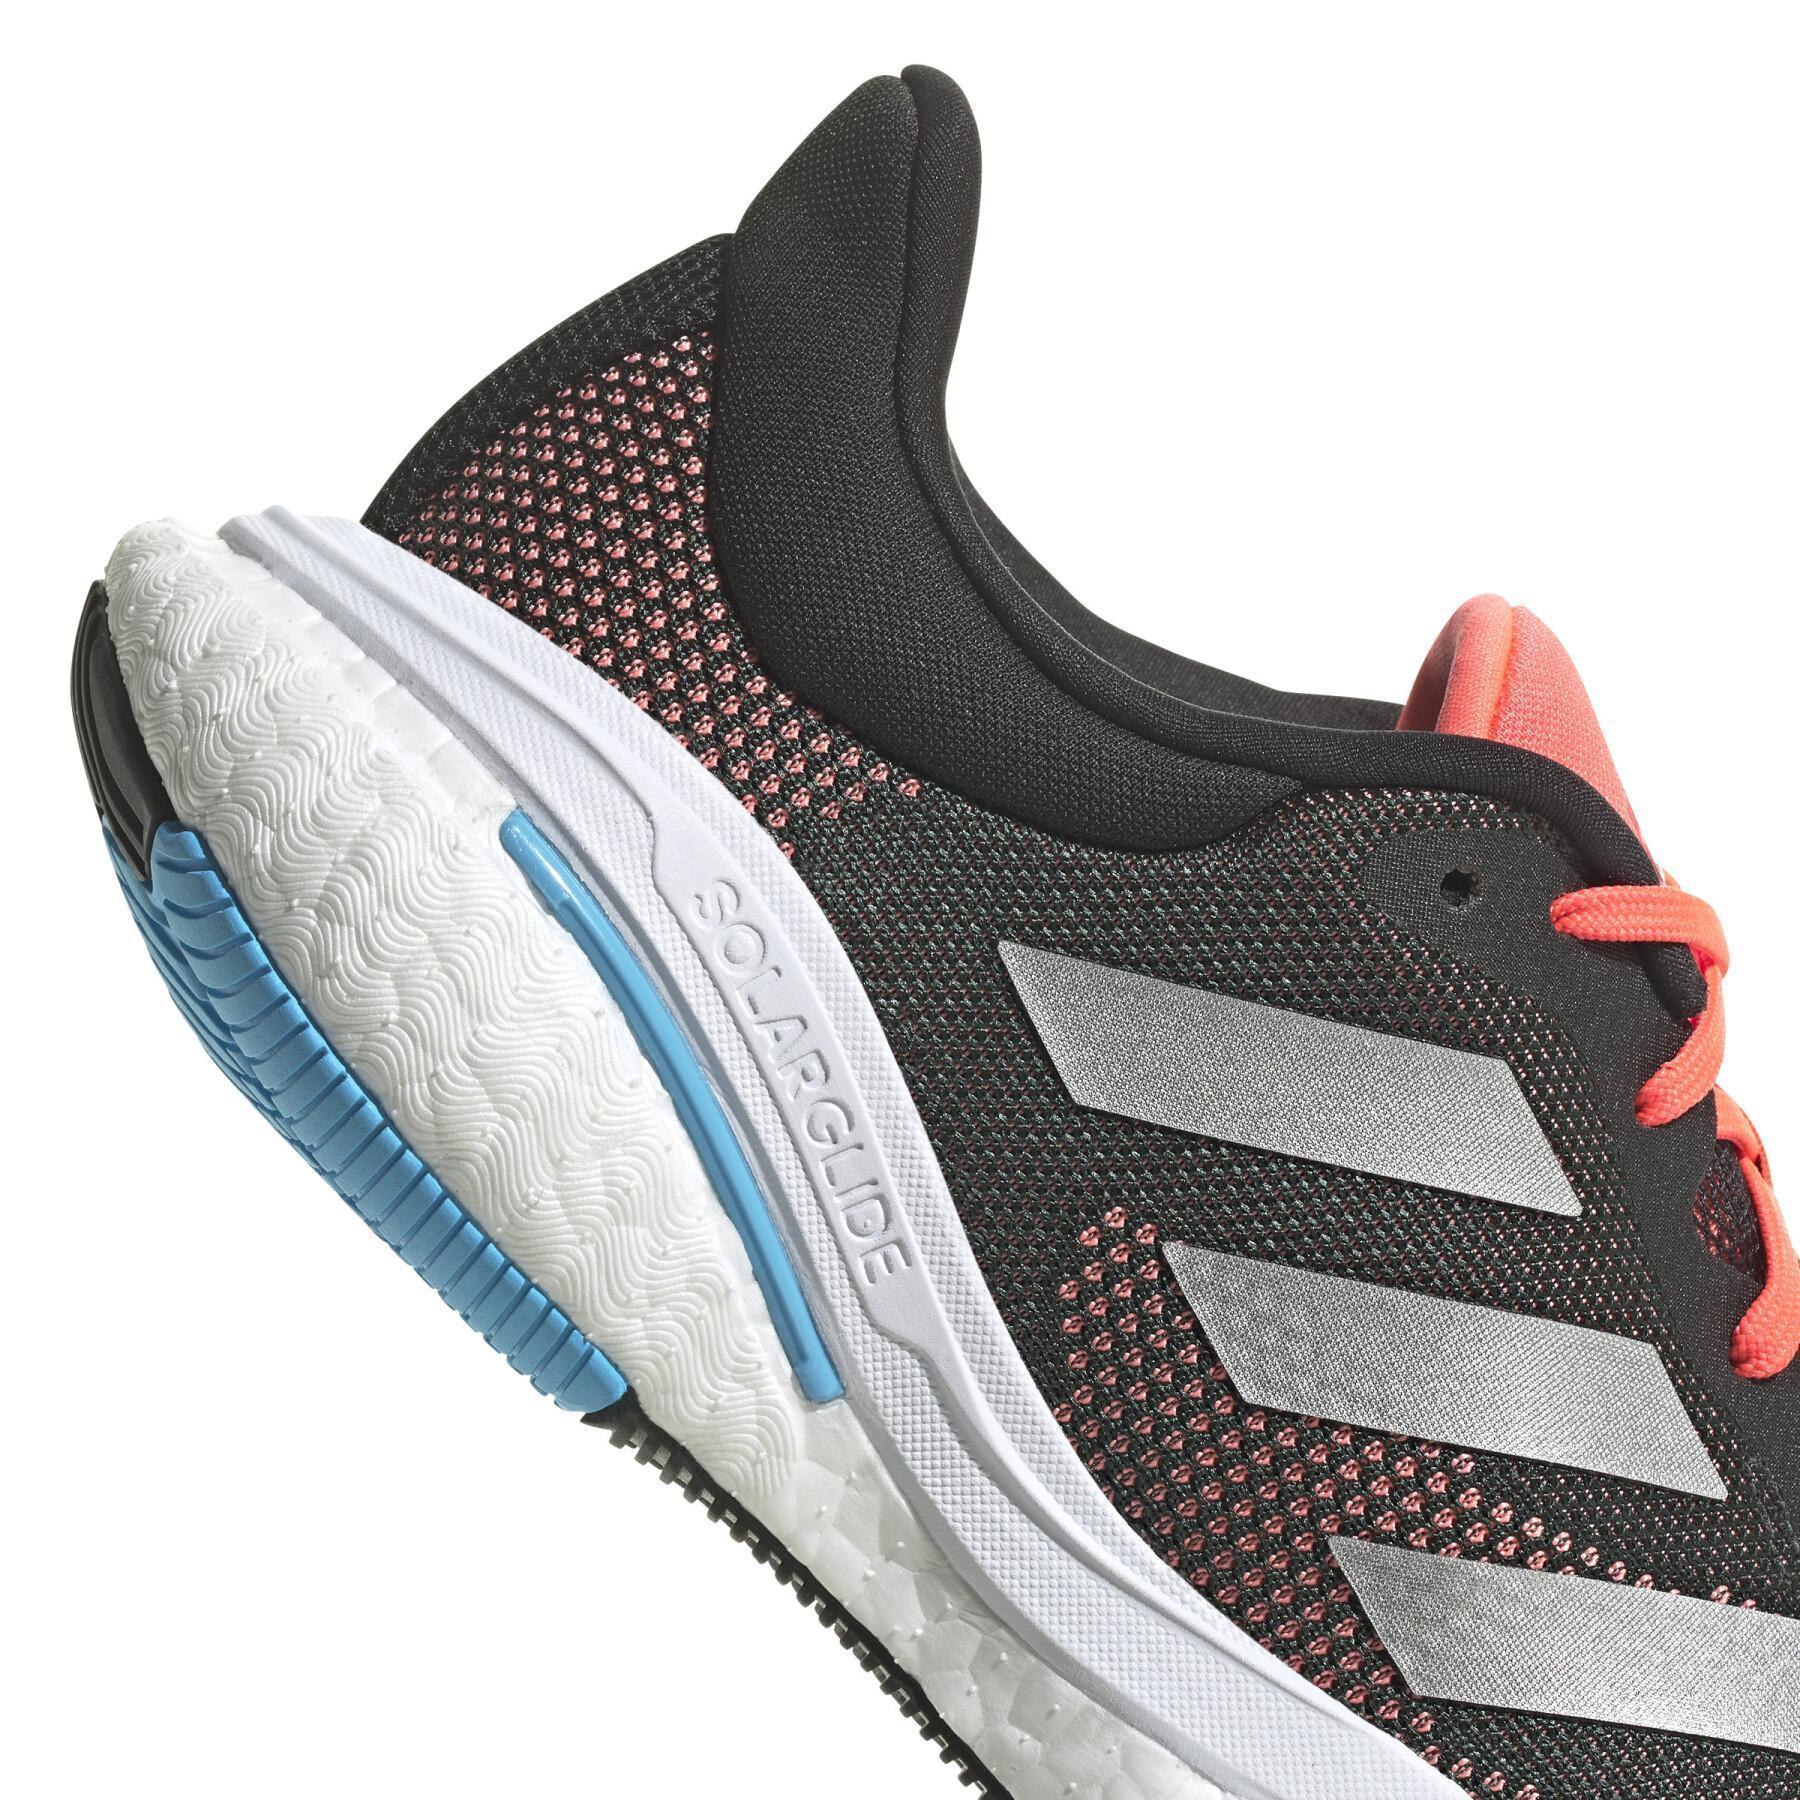 Chaussures de running adidas Solar Glide 5